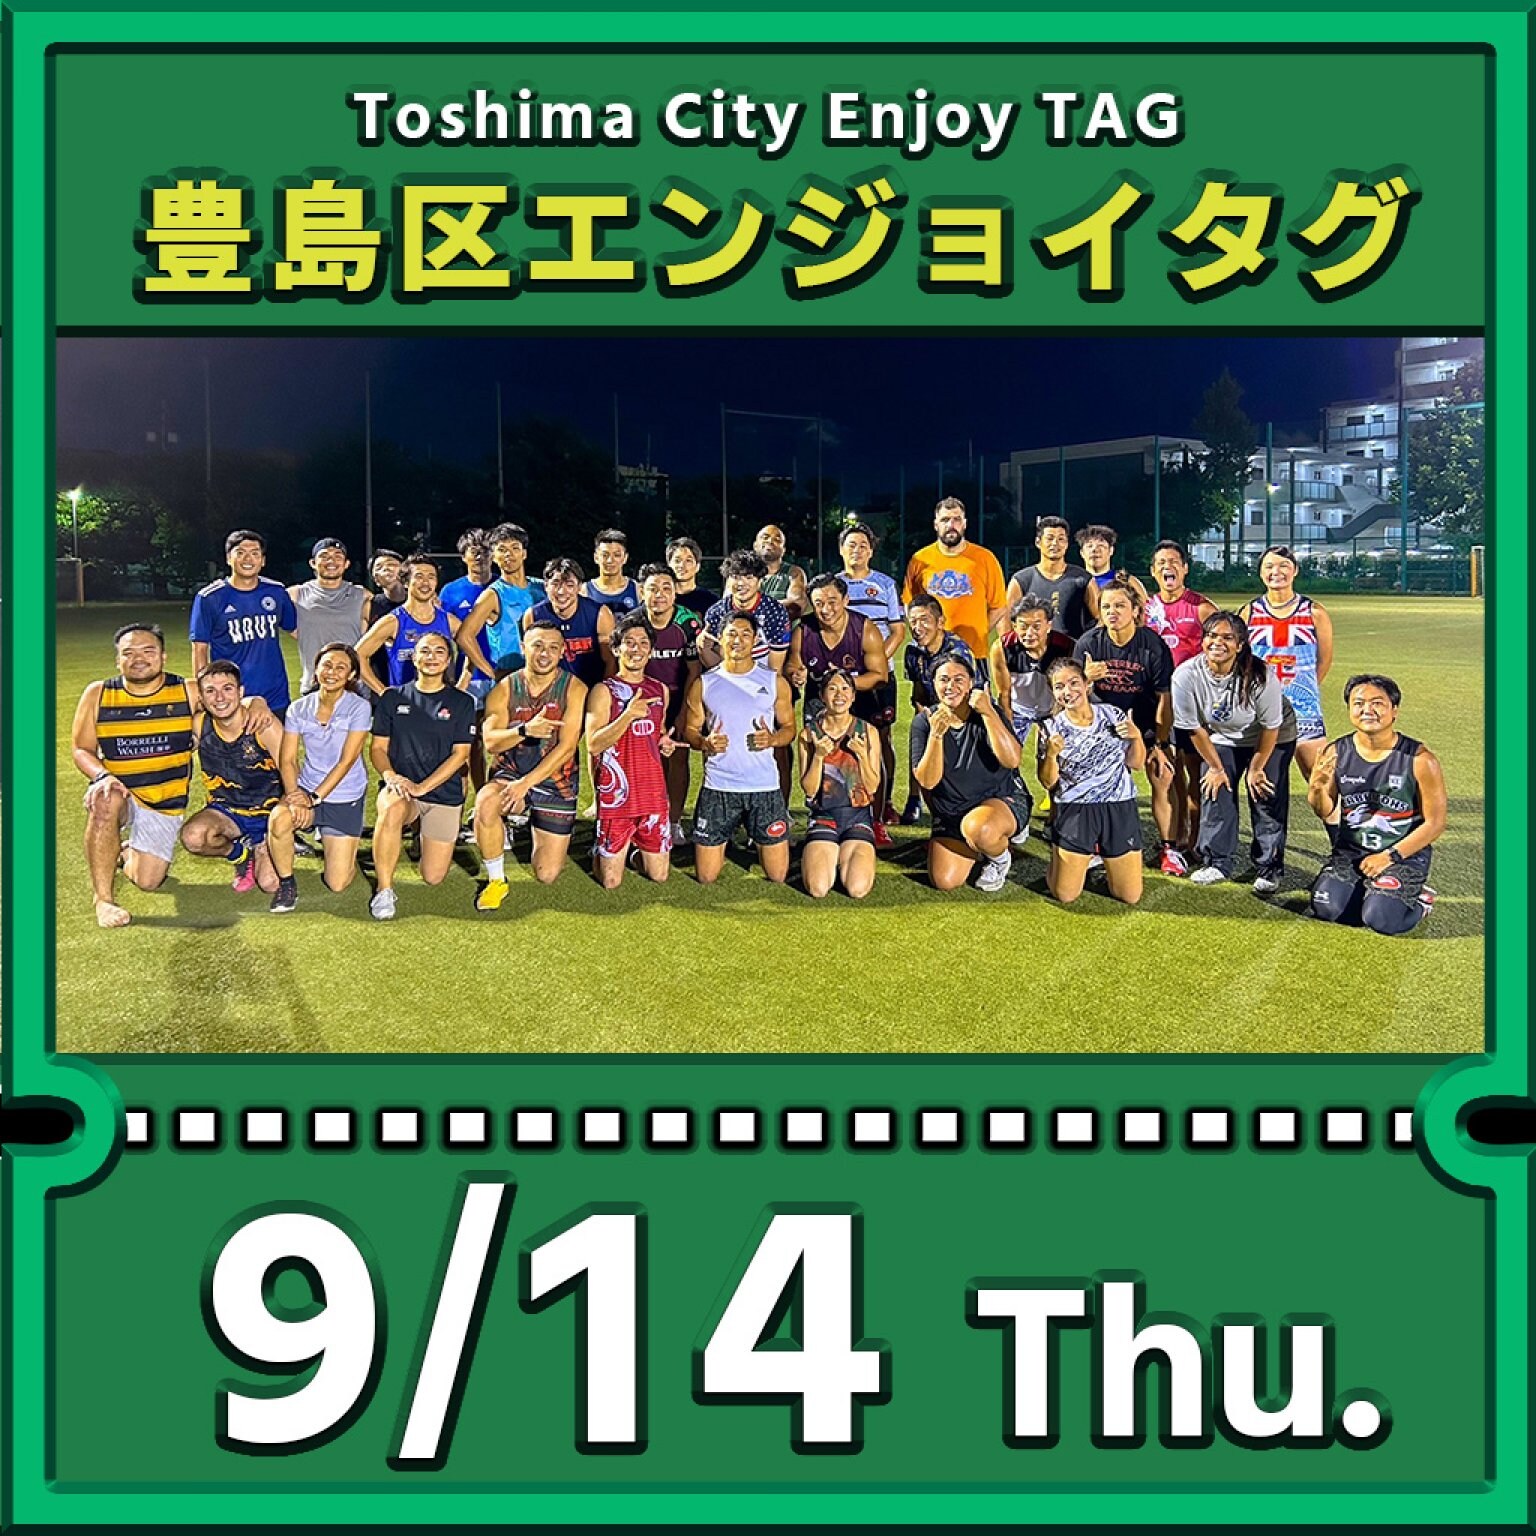 豊島区エンジョイタグ参加費・9月14日分（Toshima City Enjoy Tag Activity on 14th Sep.） 